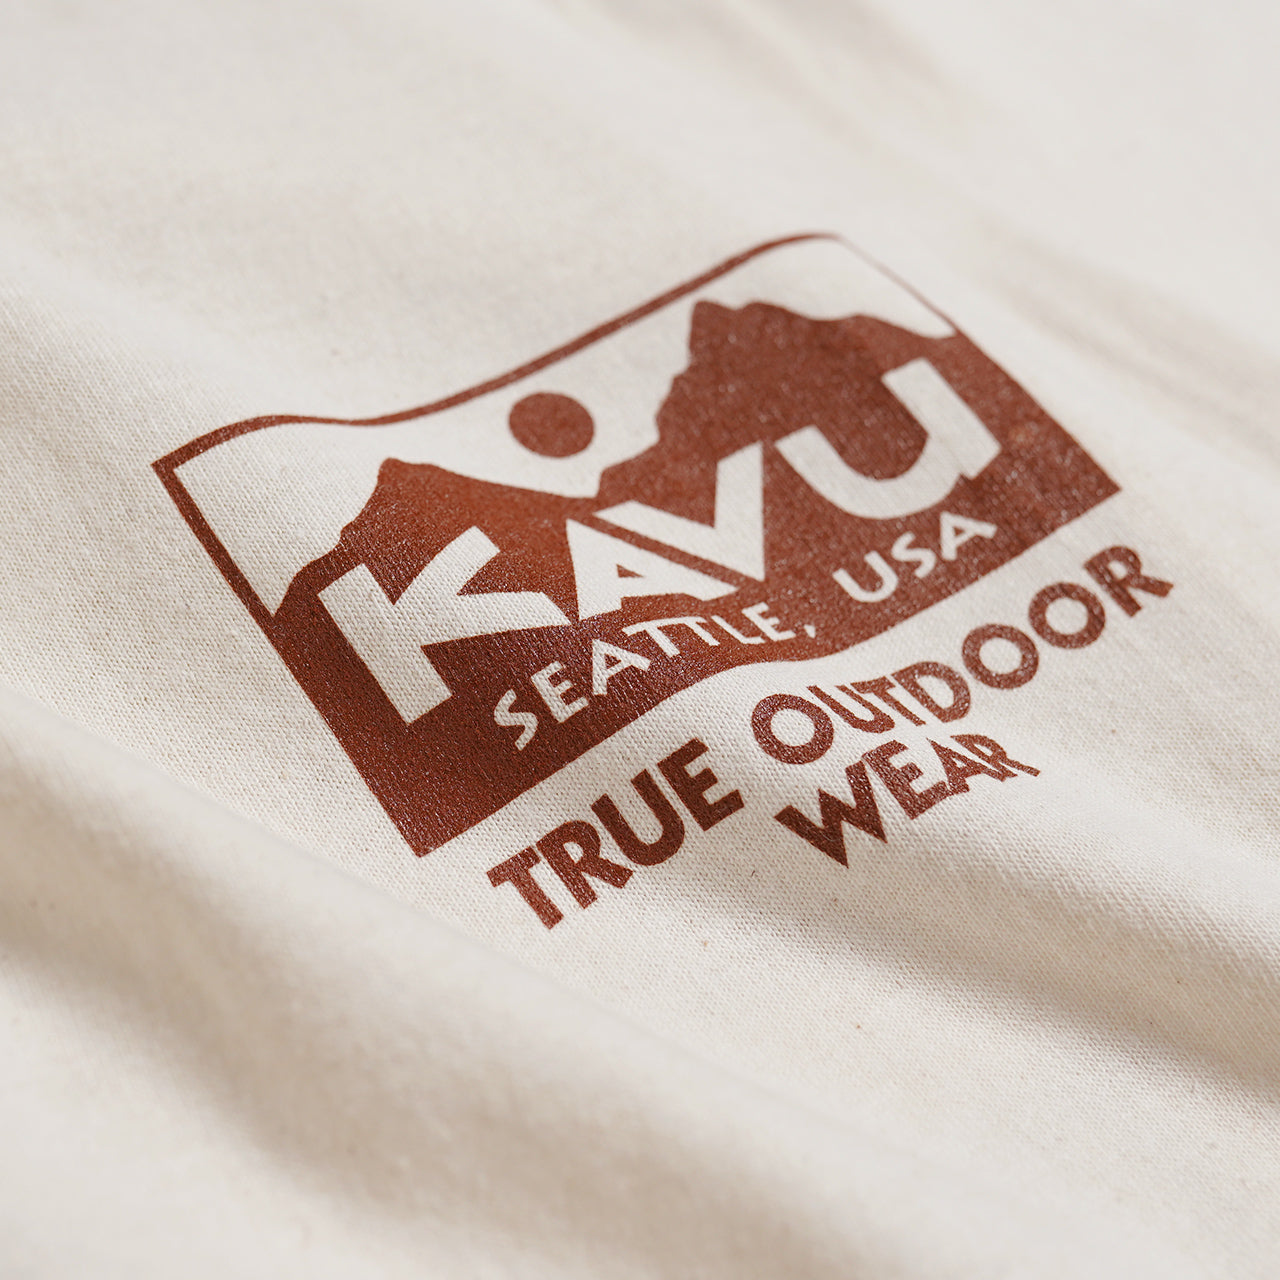 【アウトレット！30%OFF】KAVU カブー プリントTシャツ カットソー トゥルー ロゴ ティー True Logo Tee 19821842 正規取扱店